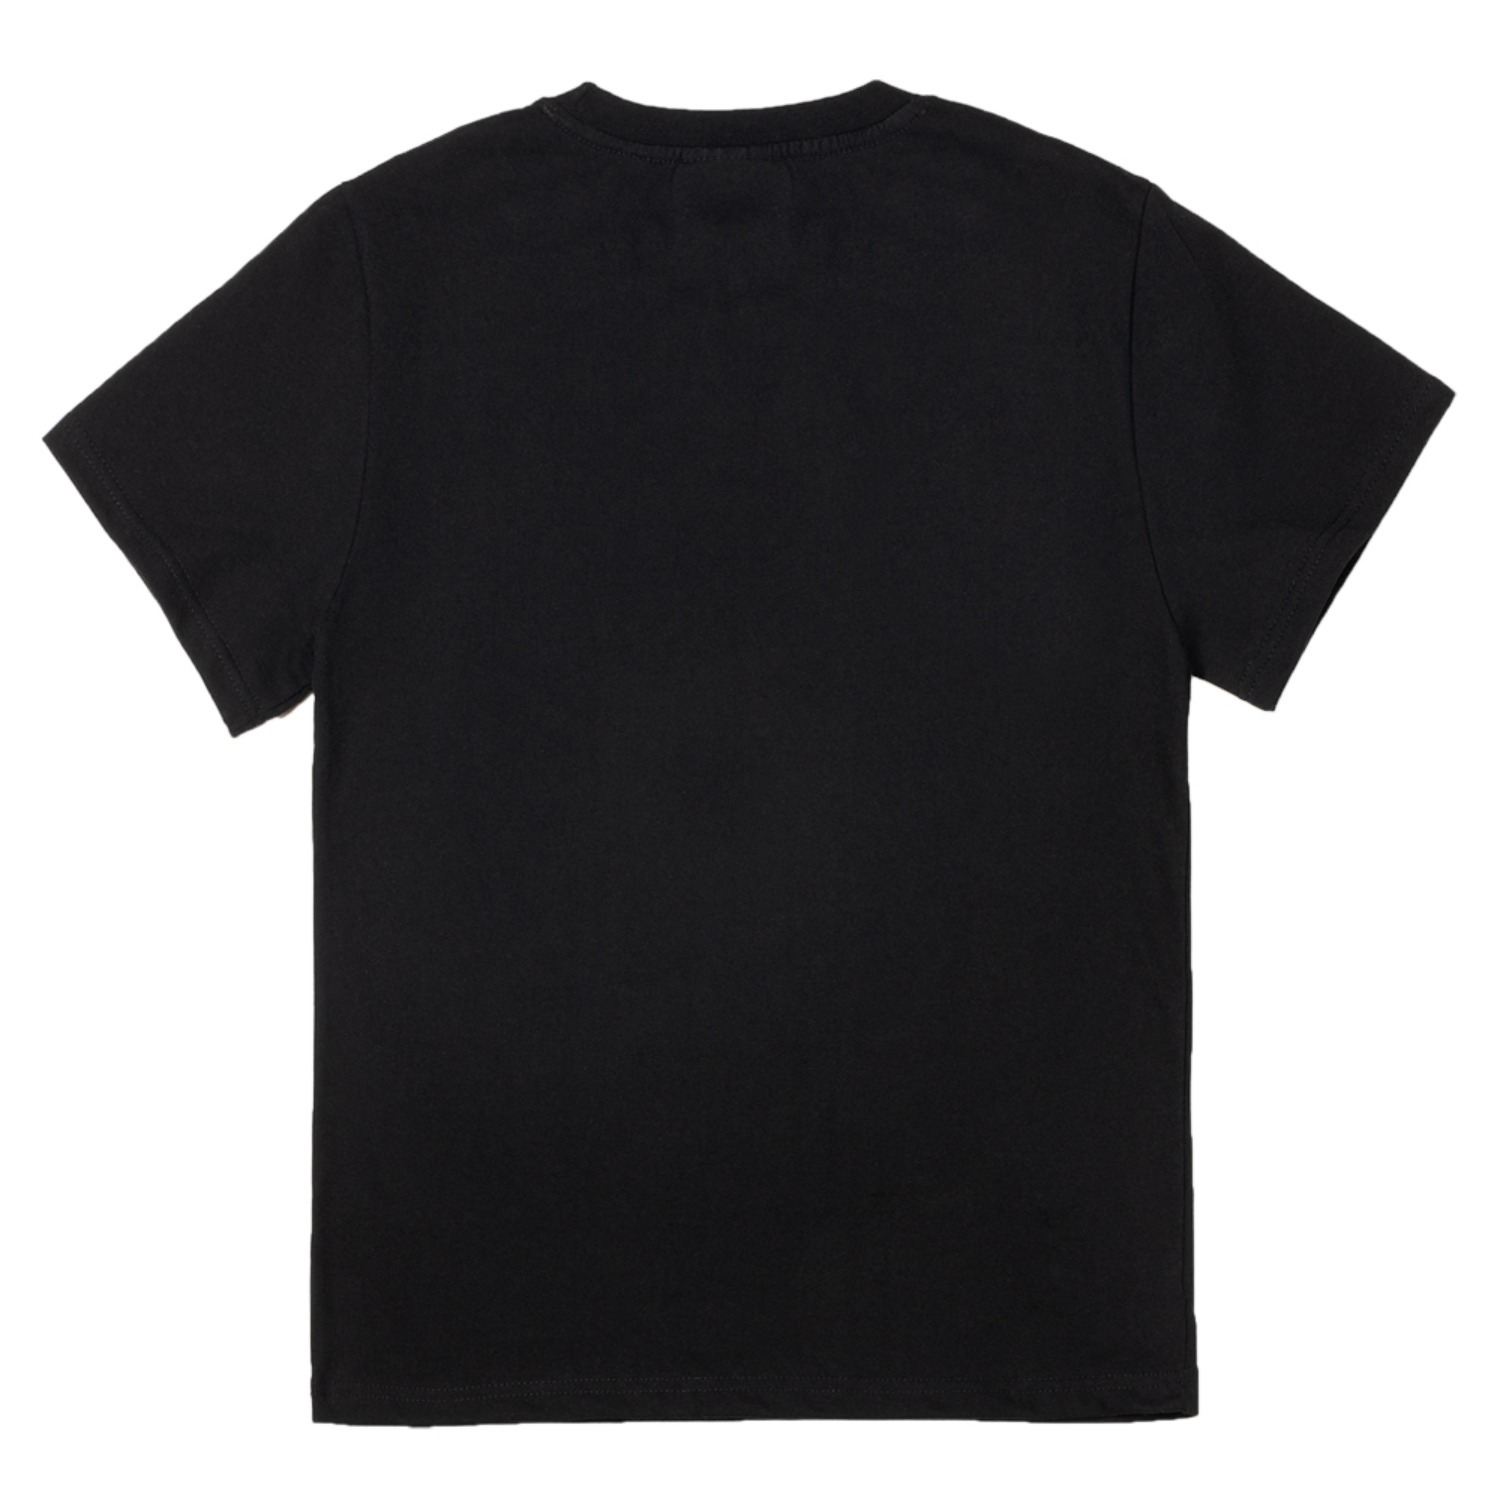 네넹넵뉍 반팔 티셔츠 블랙 YES Korean SS tshirt (Black)